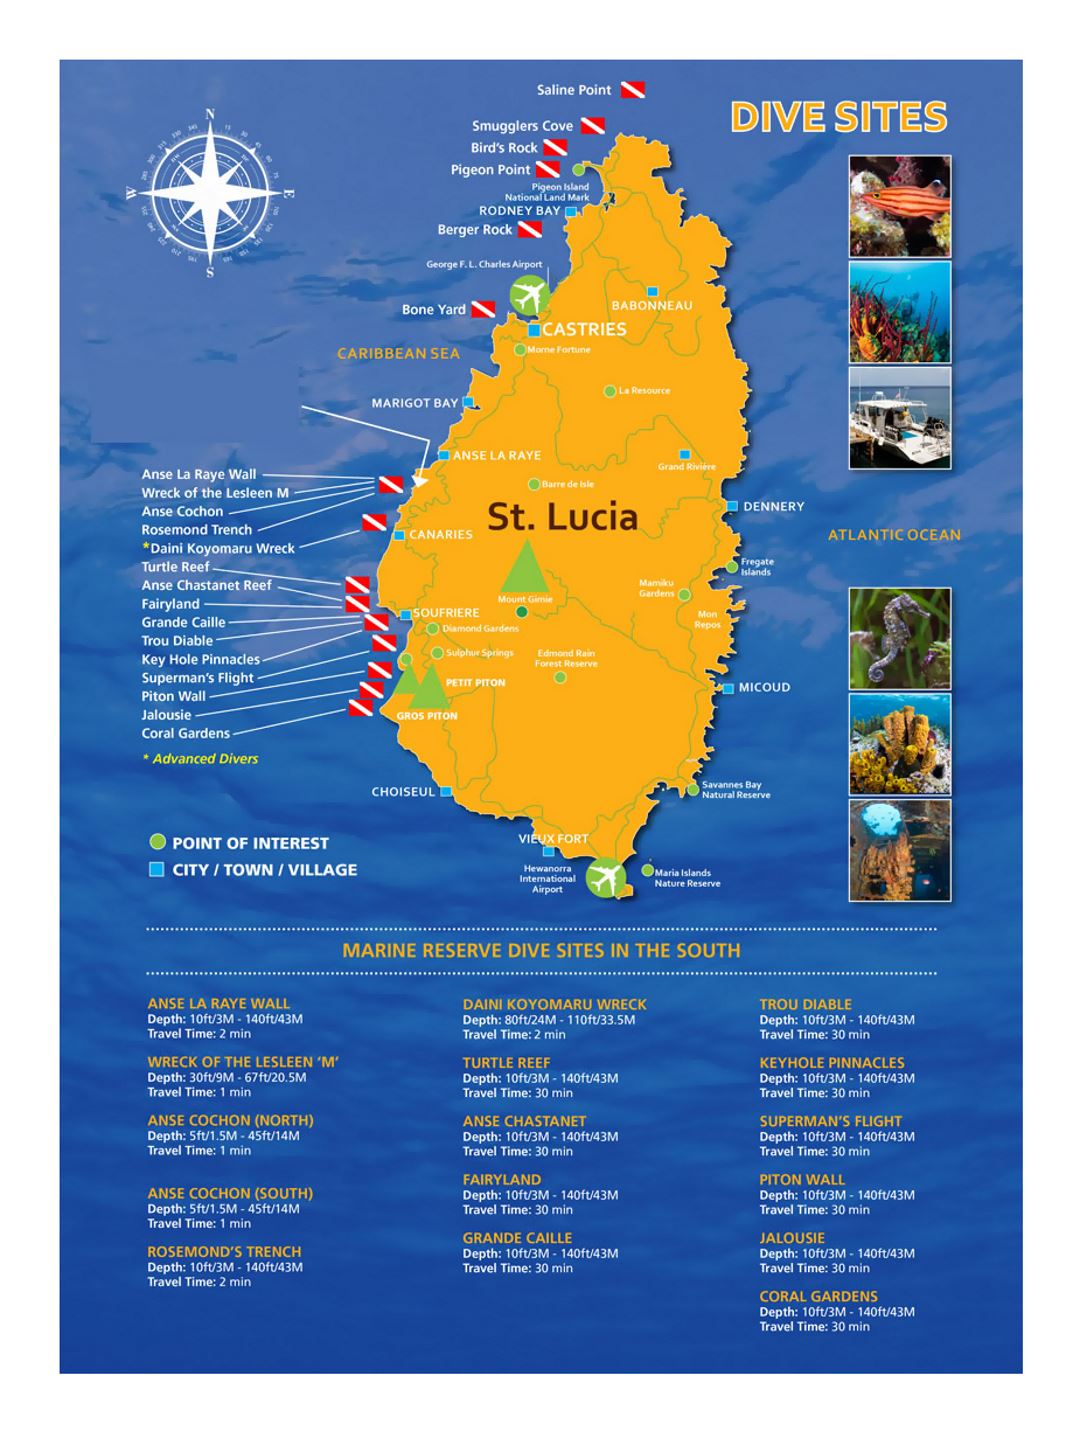 Large dive sites map of Saint Lucia